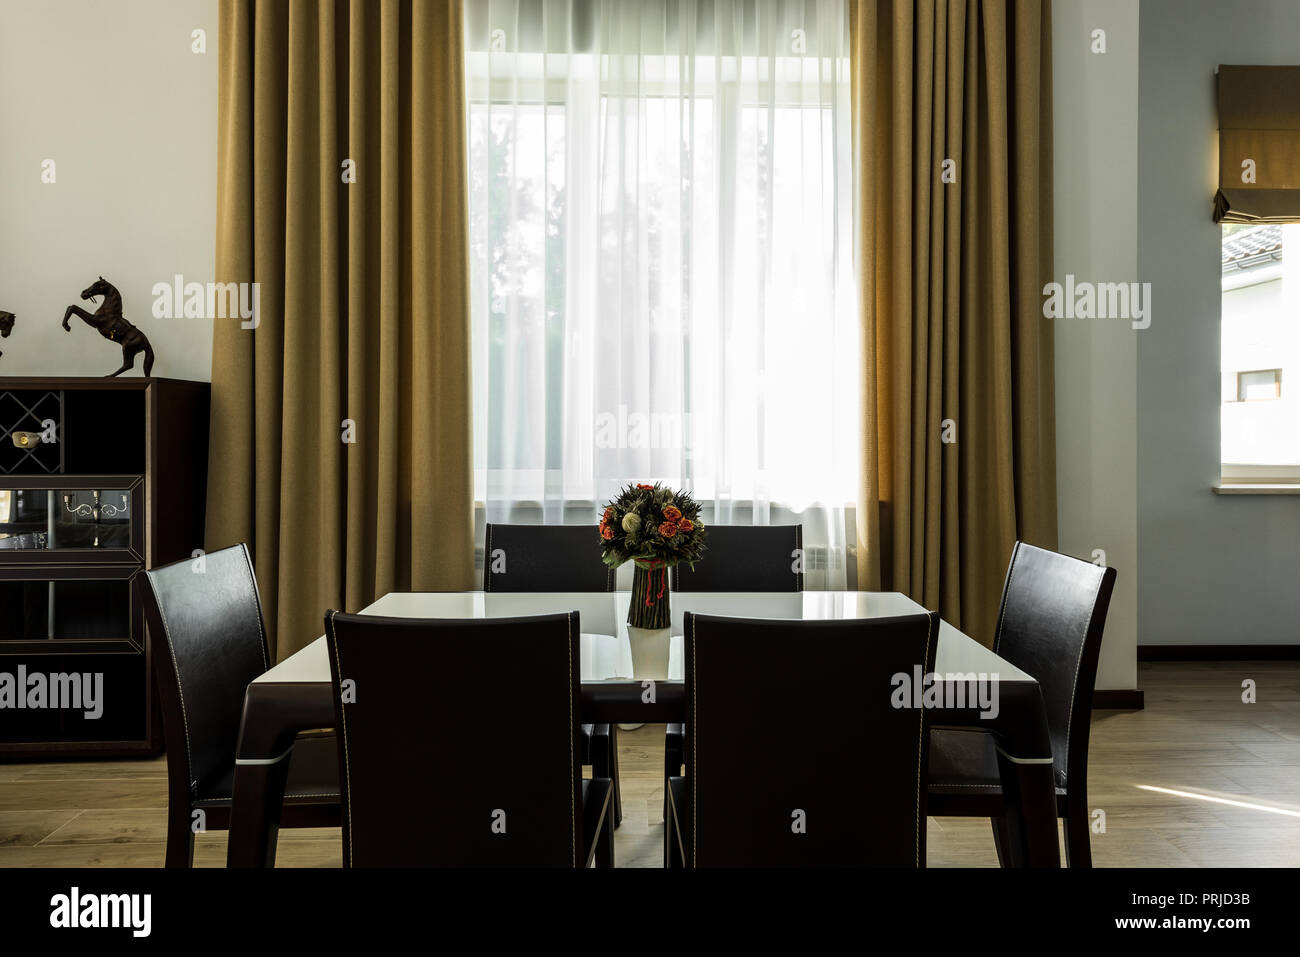 Innenansicht mit stilvollen Speisesaal mit Tisch, Stühlen und großen Fenster Stockfoto